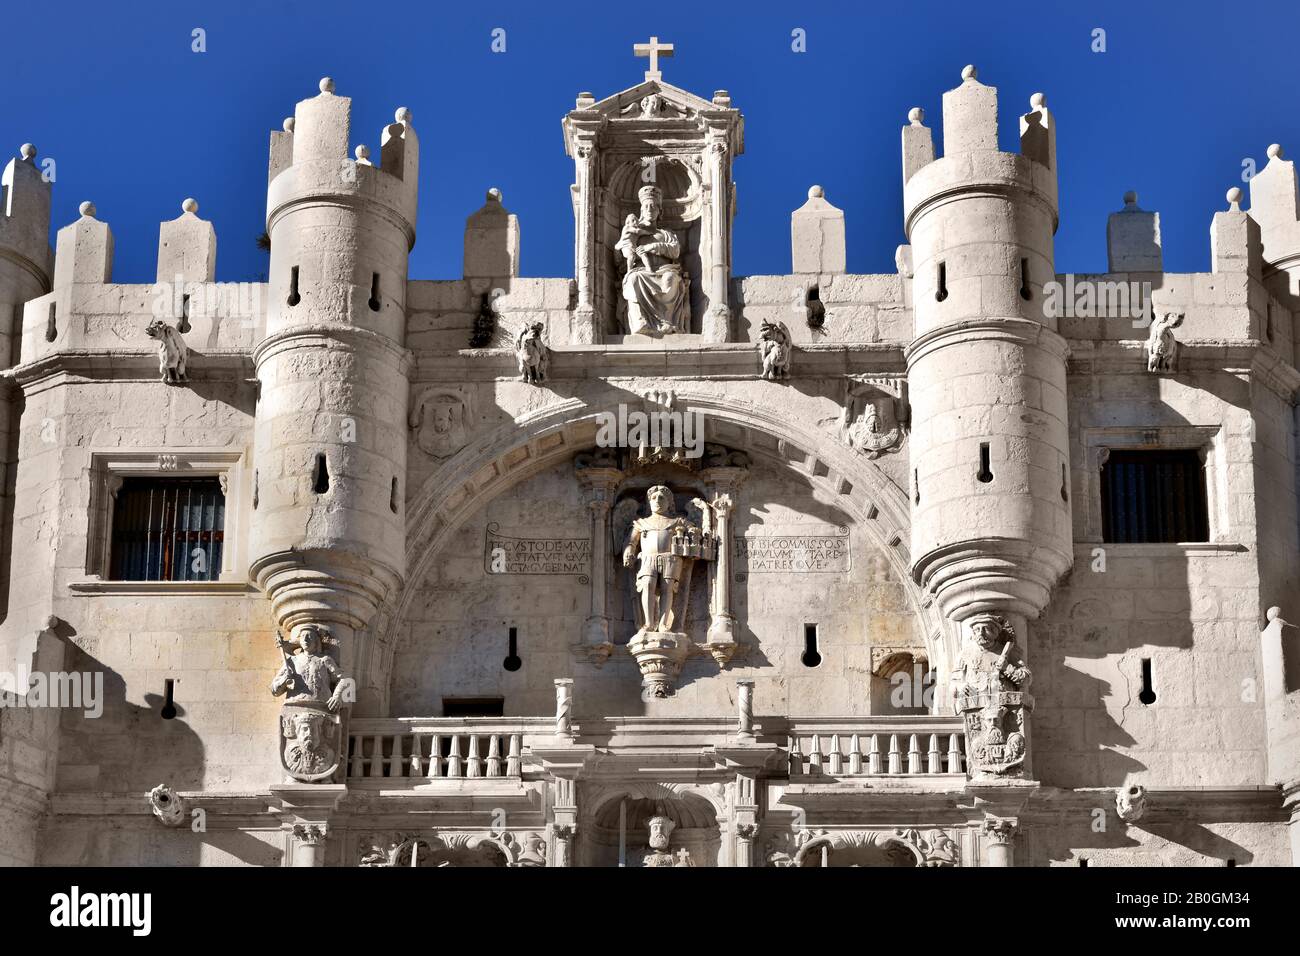 Das Stadttor ist bekannt als Arco de Santa Maria, Burgos, Spanische Provinz, Castilla y Leon, Spanien. (Das Arco ist einer der zwölf mittelalterlichen alten Tore, die dieses besondere Tor direkt am Fluss ist und einen großen Eingang zur Kathedrale bietet. Die Gründer der Stadt sind an der Fassade zu sehen, ebenso wie die von El Cid.) Stockfoto